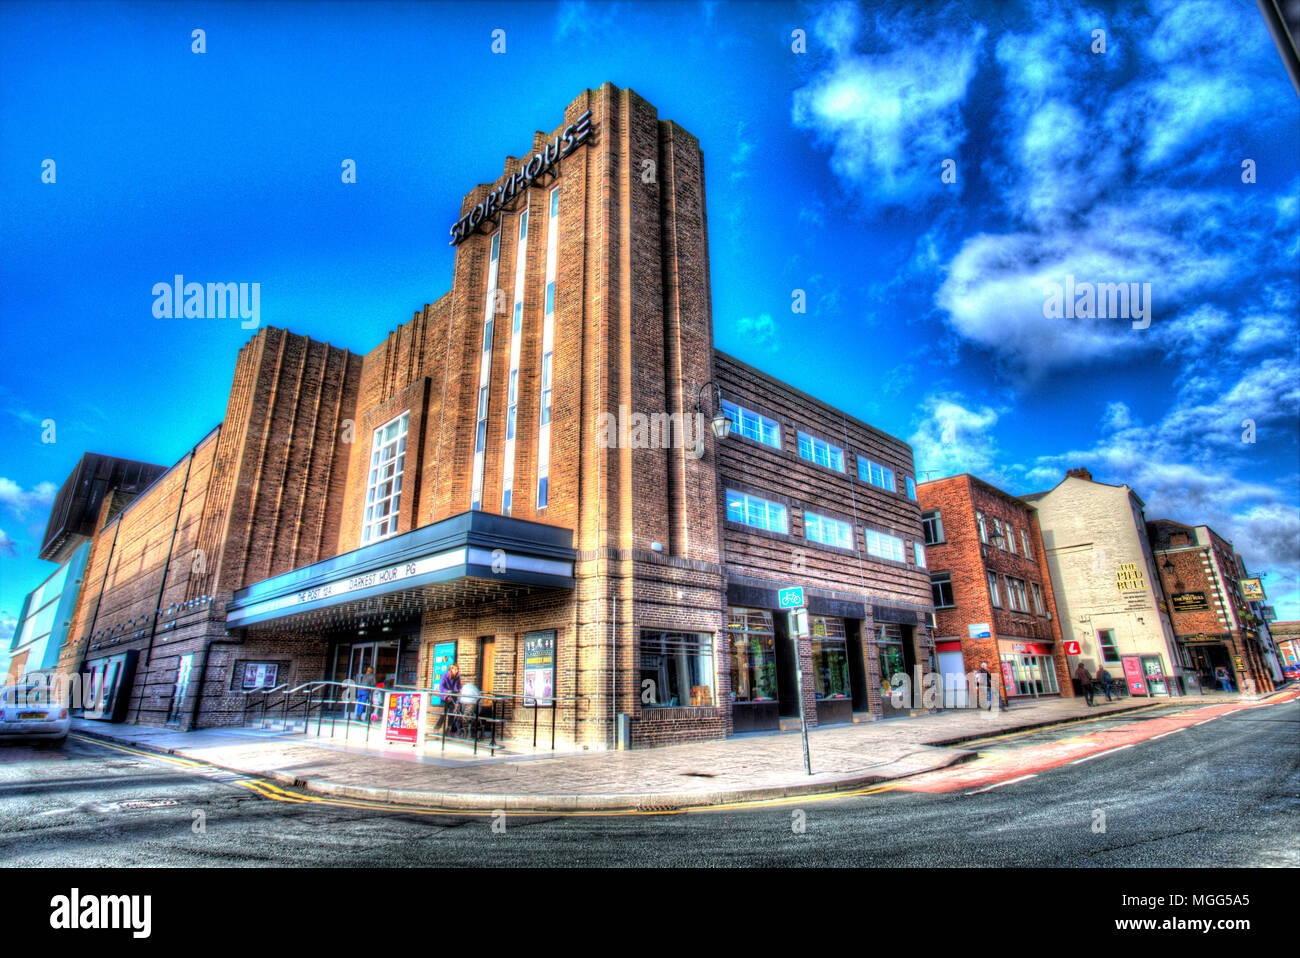 Ville de Chester, en Angleterre. Vue artistique de l'ancien bâtiment du cinéma Odeon à la jonction de Northgate Street et Hunter Street. Banque D'Images